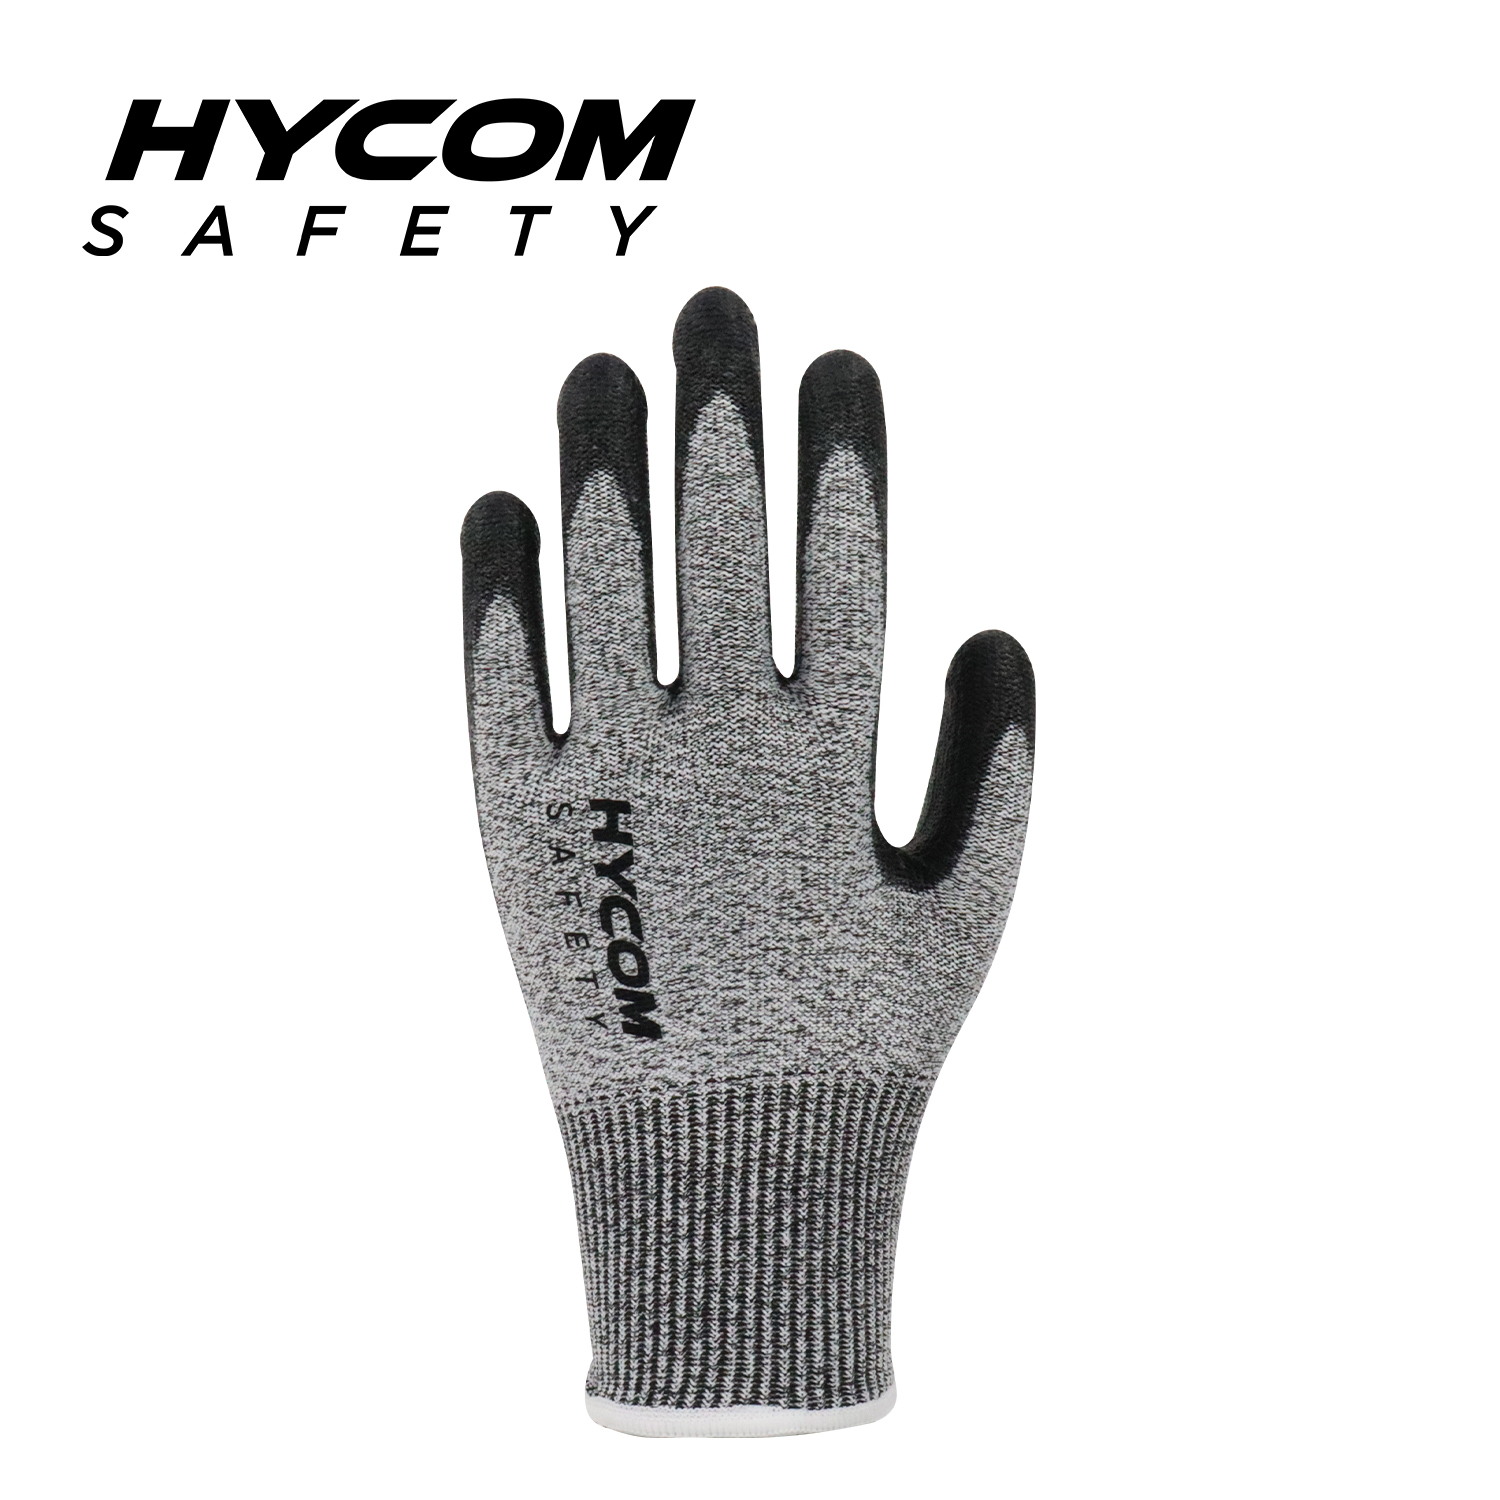 HYCOM Atemgeschnittener 13G ANSI 5 schnittfester Handschuh mit Polyurethan-Beschichtung an der Handfläche, atmungsaktive PSA-Arbeitshandschuhe mit angenehmem Handgefühl